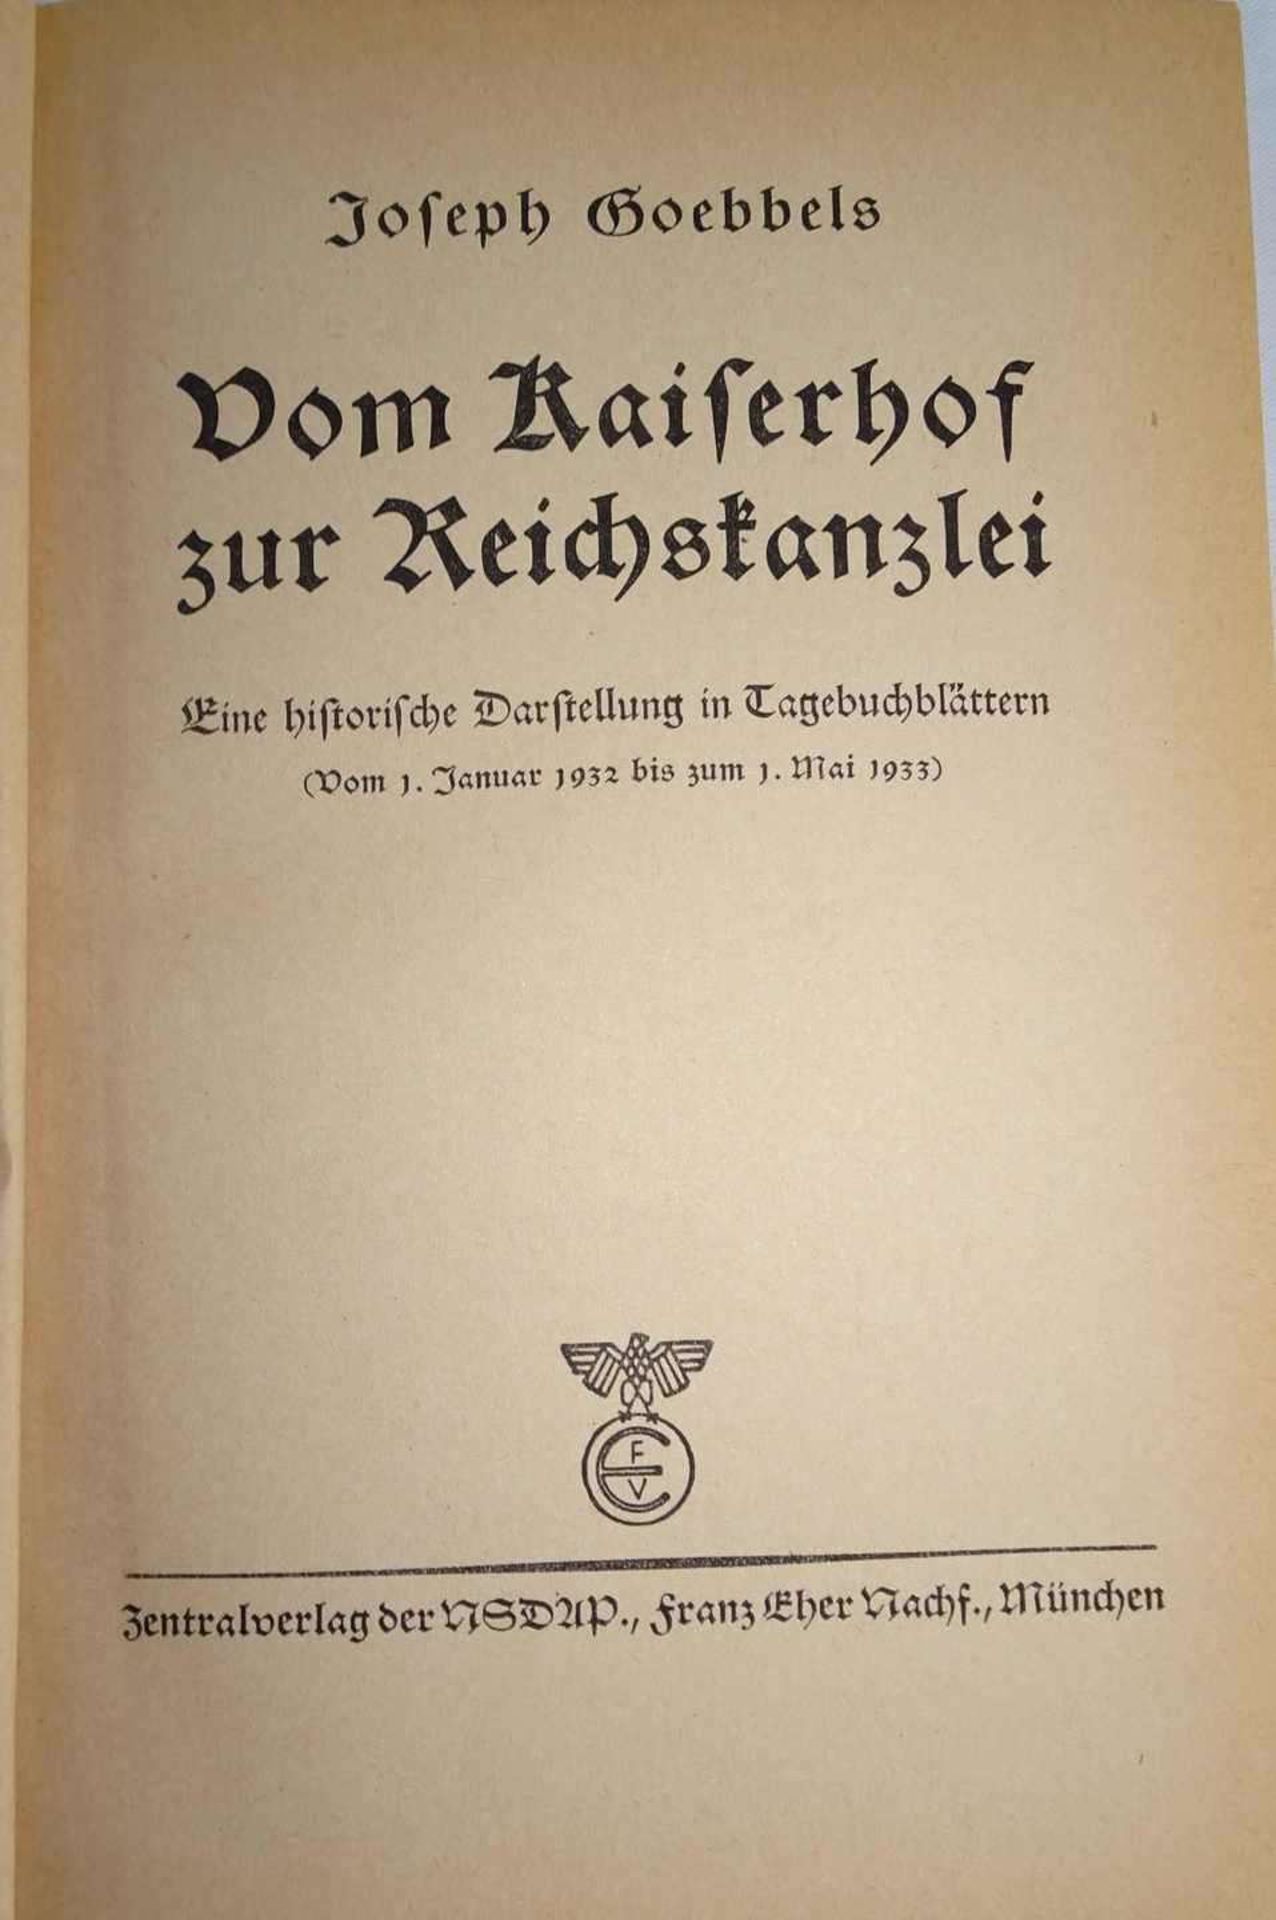 Buch Dr. Joseph Goebbels ""Vom Kaiserhof zur Reichskanzlei"" Book Dr. Joseph Goebbels ""From - Image 2 of 2